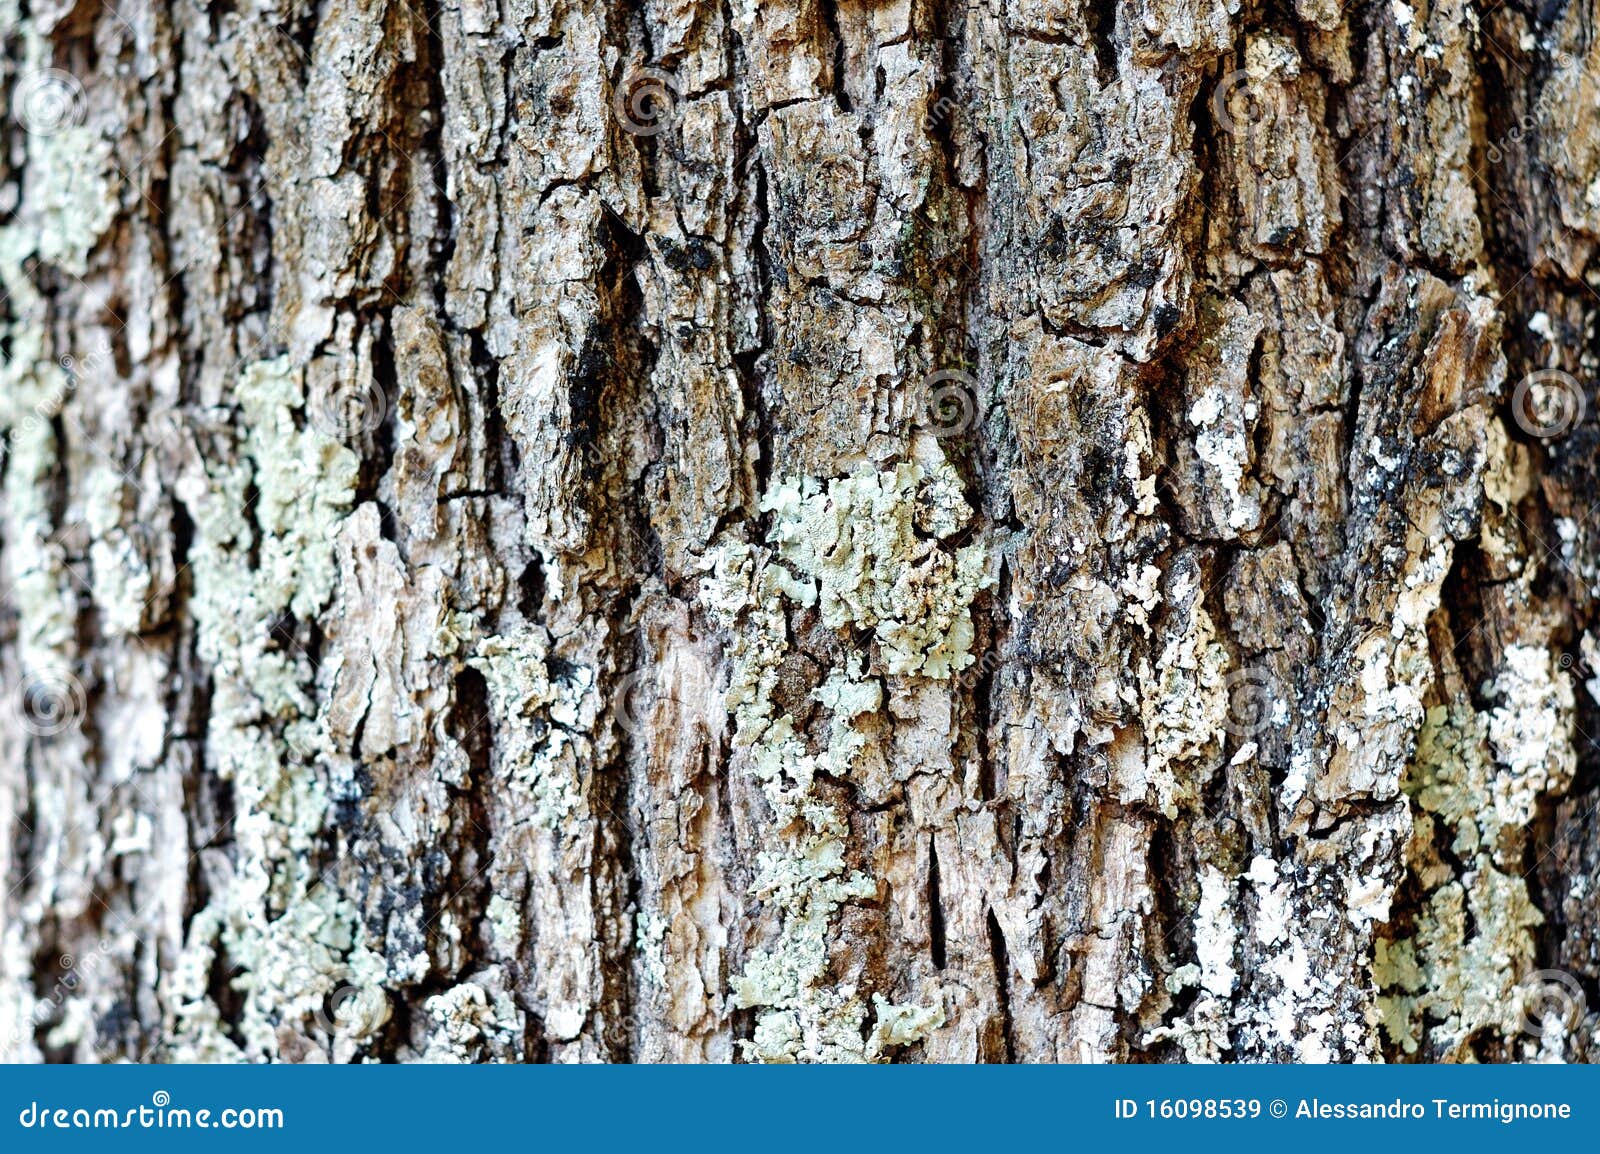 oak cortex closeup, texture